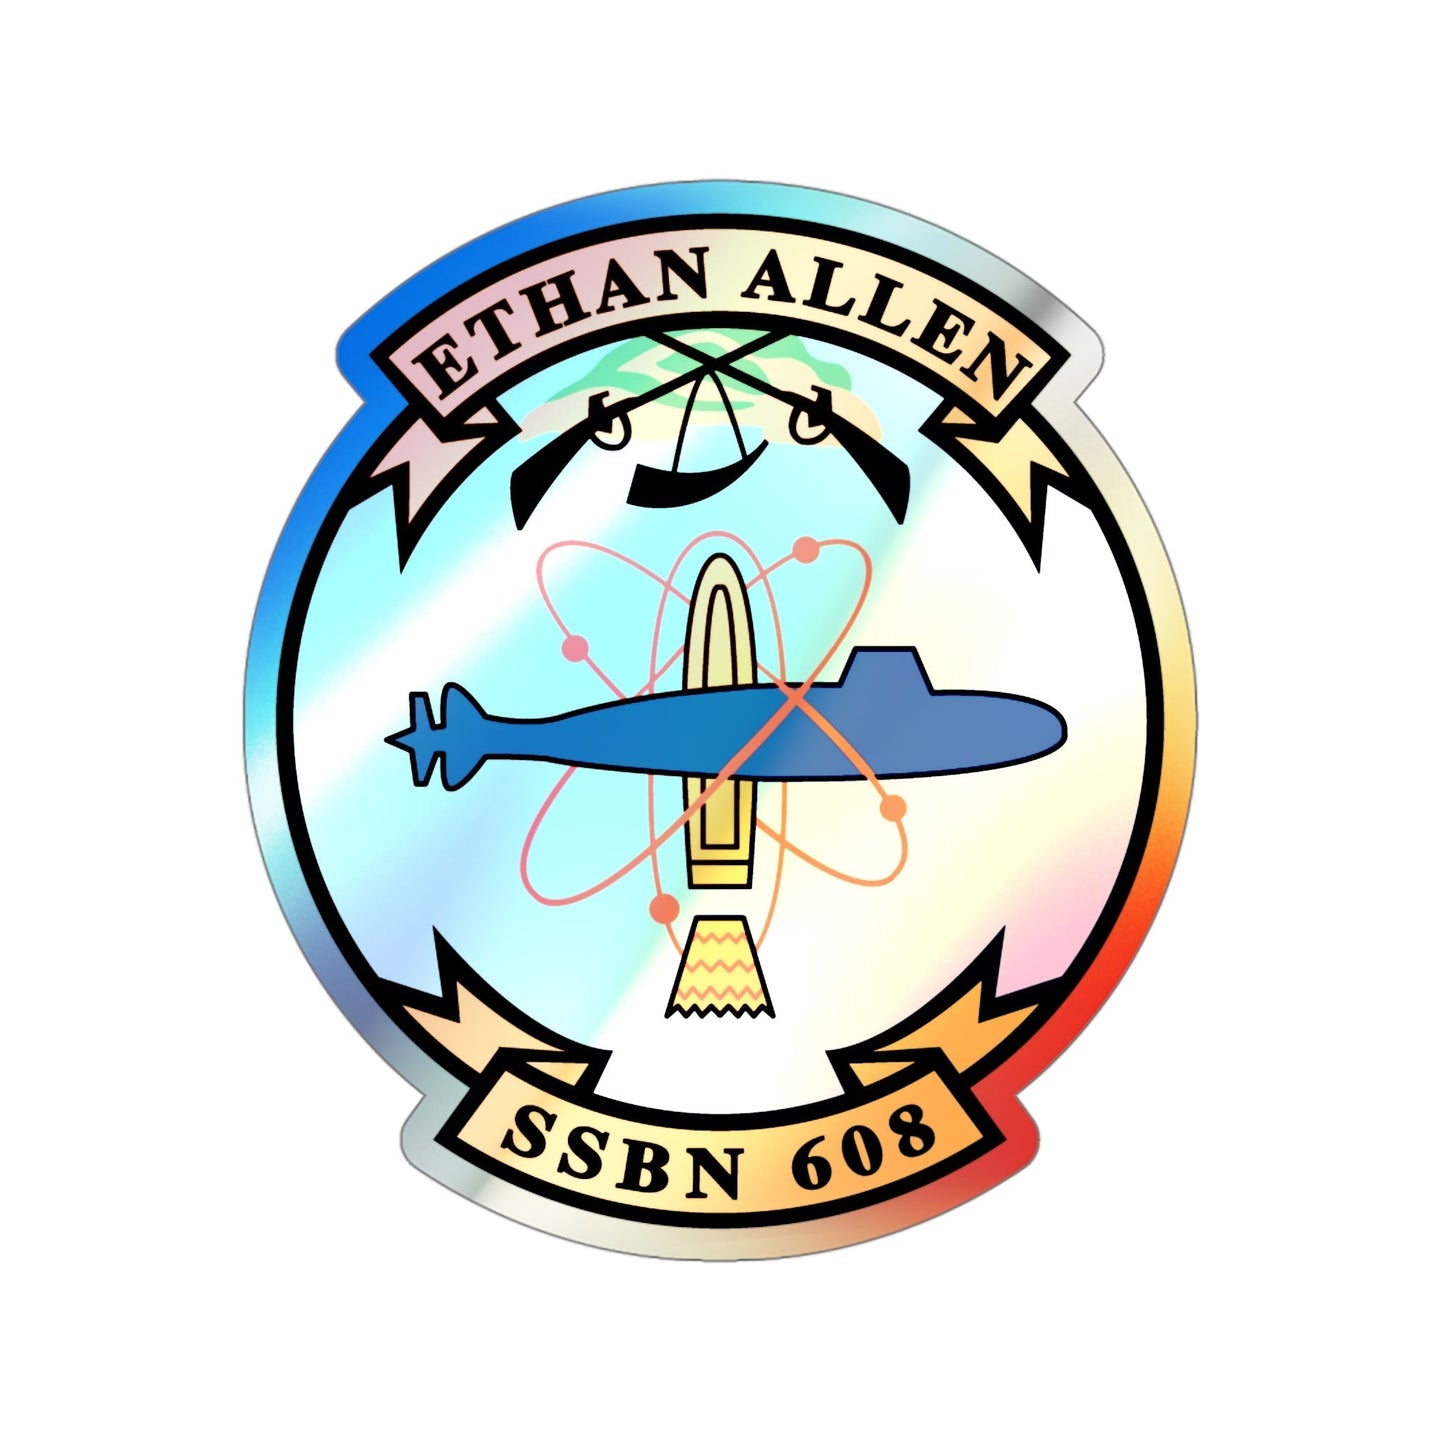 Ethan Allen SSBN 608 (U.S. Navy) Holographic STICKER Die-Cut Vinyl Decal-4 Inch-The Sticker Space